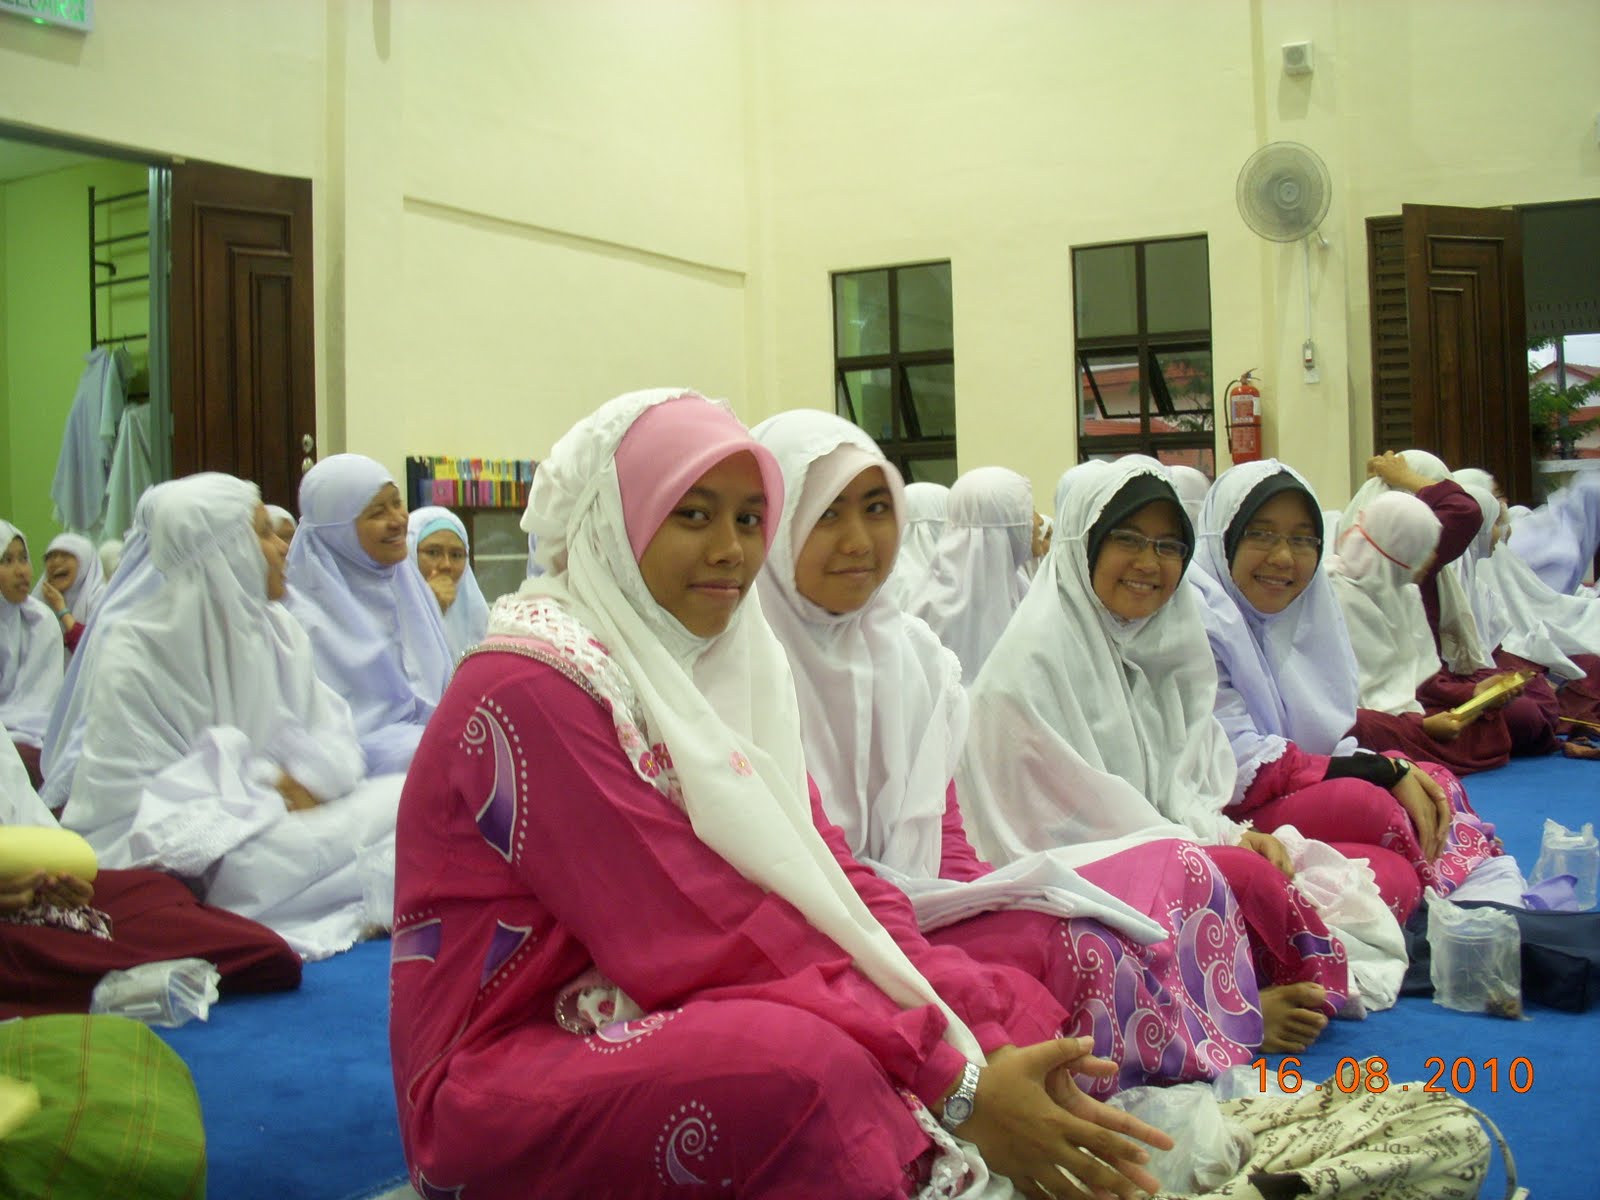 SMK BANDAR MAHARANI, MUAR: Majlis Iftar Jamaie & Solat 